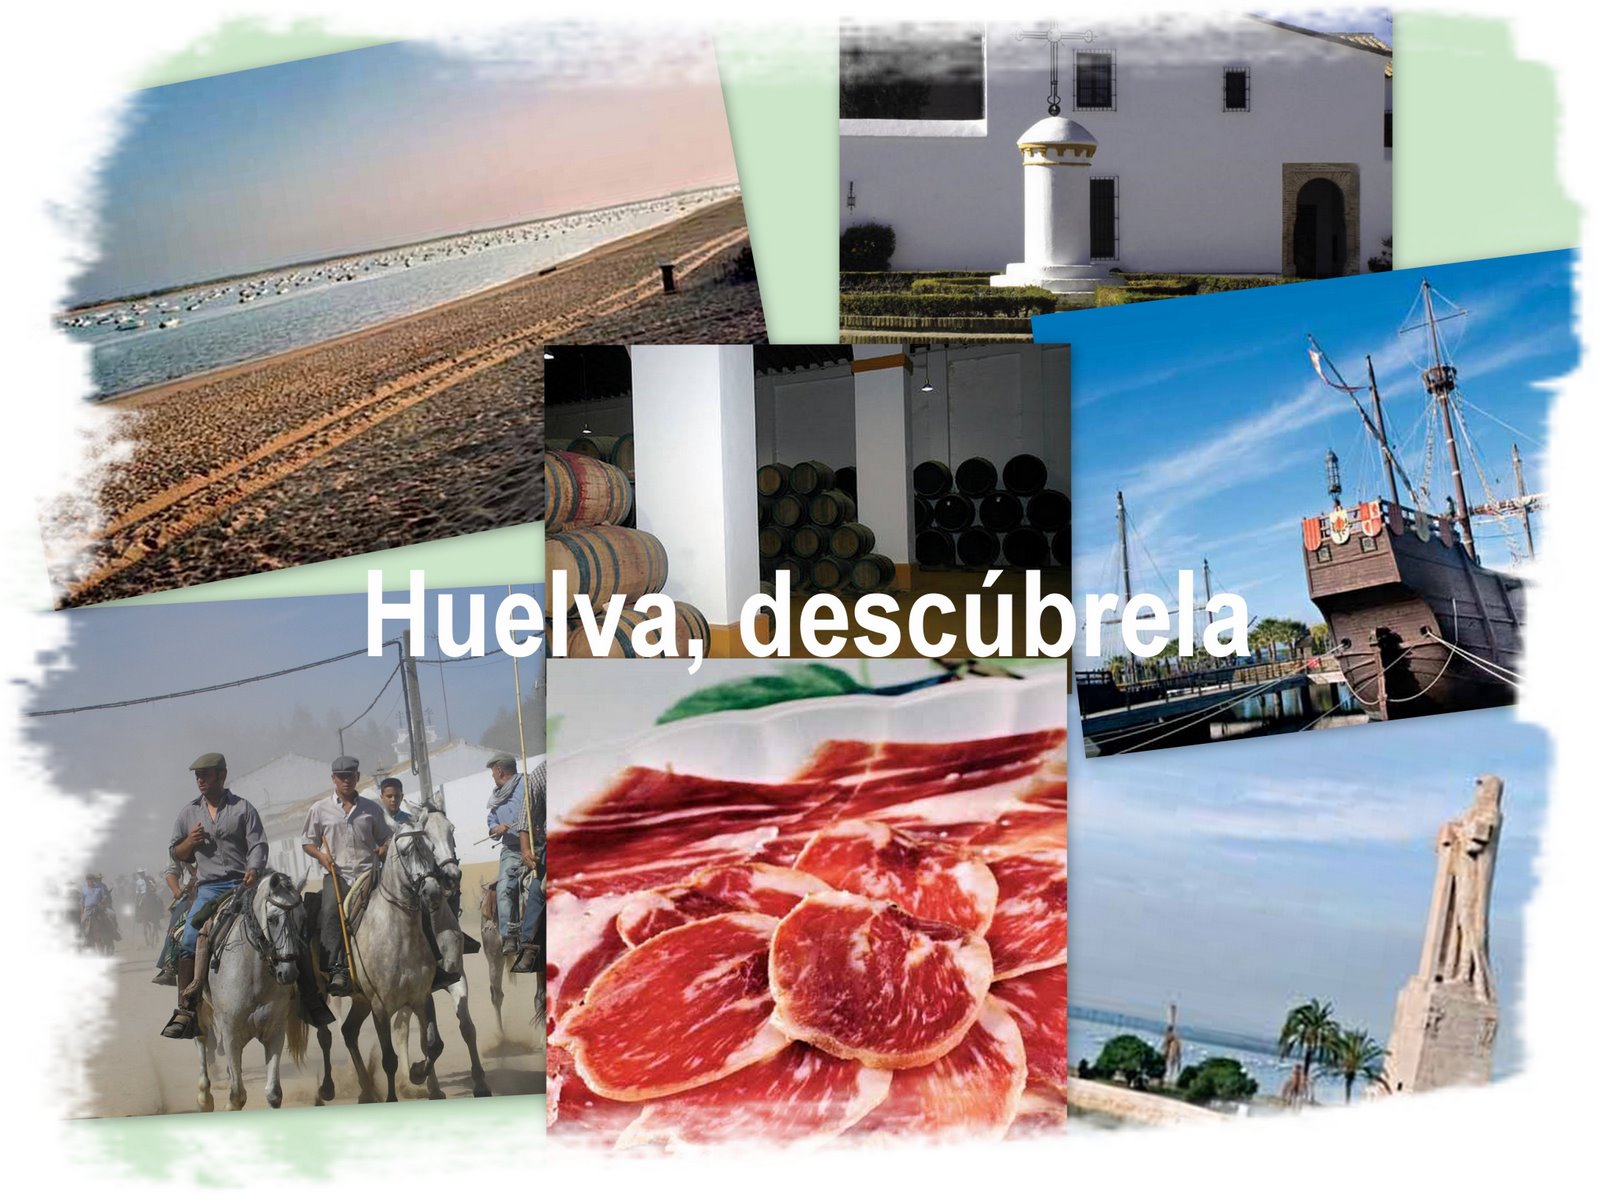 Huelva, descúbrela